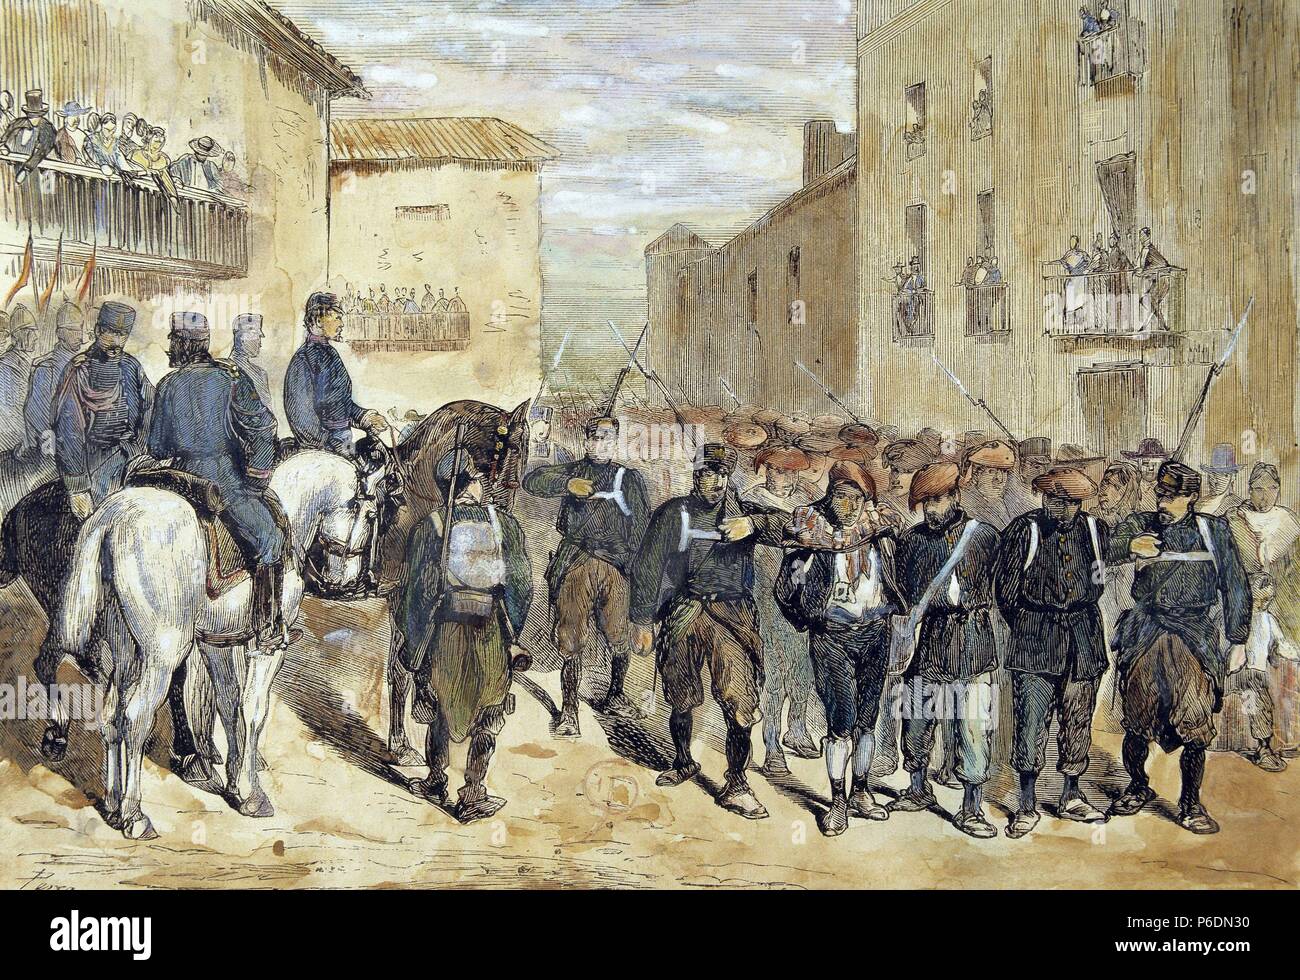 GUERRA CARLISTA. TERCERA GUERRA CARLISTA. ( 1872 - 1876 ). REINADO DE ALFONSO XII. ' ENTREDA EN ALBACETE DE LA COLUMNA DABAN CON PRISIONEROS , AÑO 1874 '. GRABADO DE LA ILUSTRACION ESPAÑOLA Y AMERICANA. Stock Photo